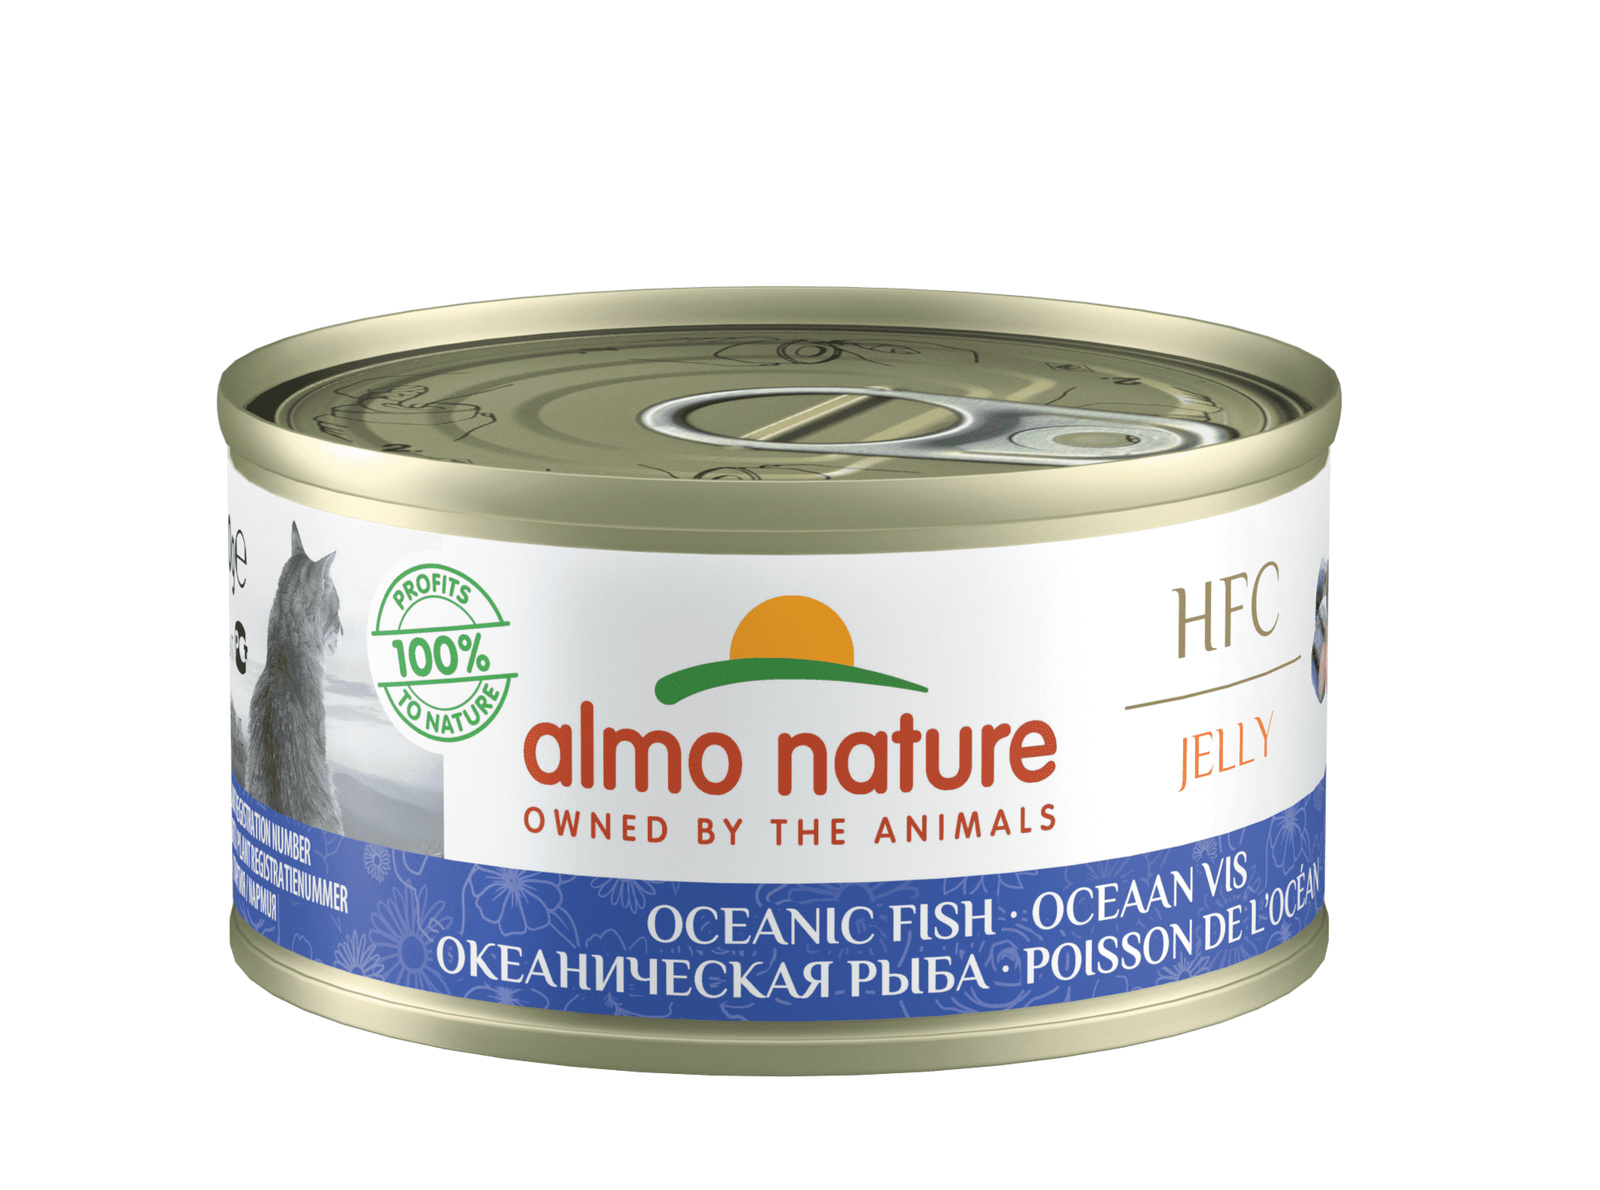 Almo Nature консервы Almo Nature консервы с океанической рыбой в желе для кошек (70 г) almo nature консервы almo nature консервы для кошек тунец в желе 70 г